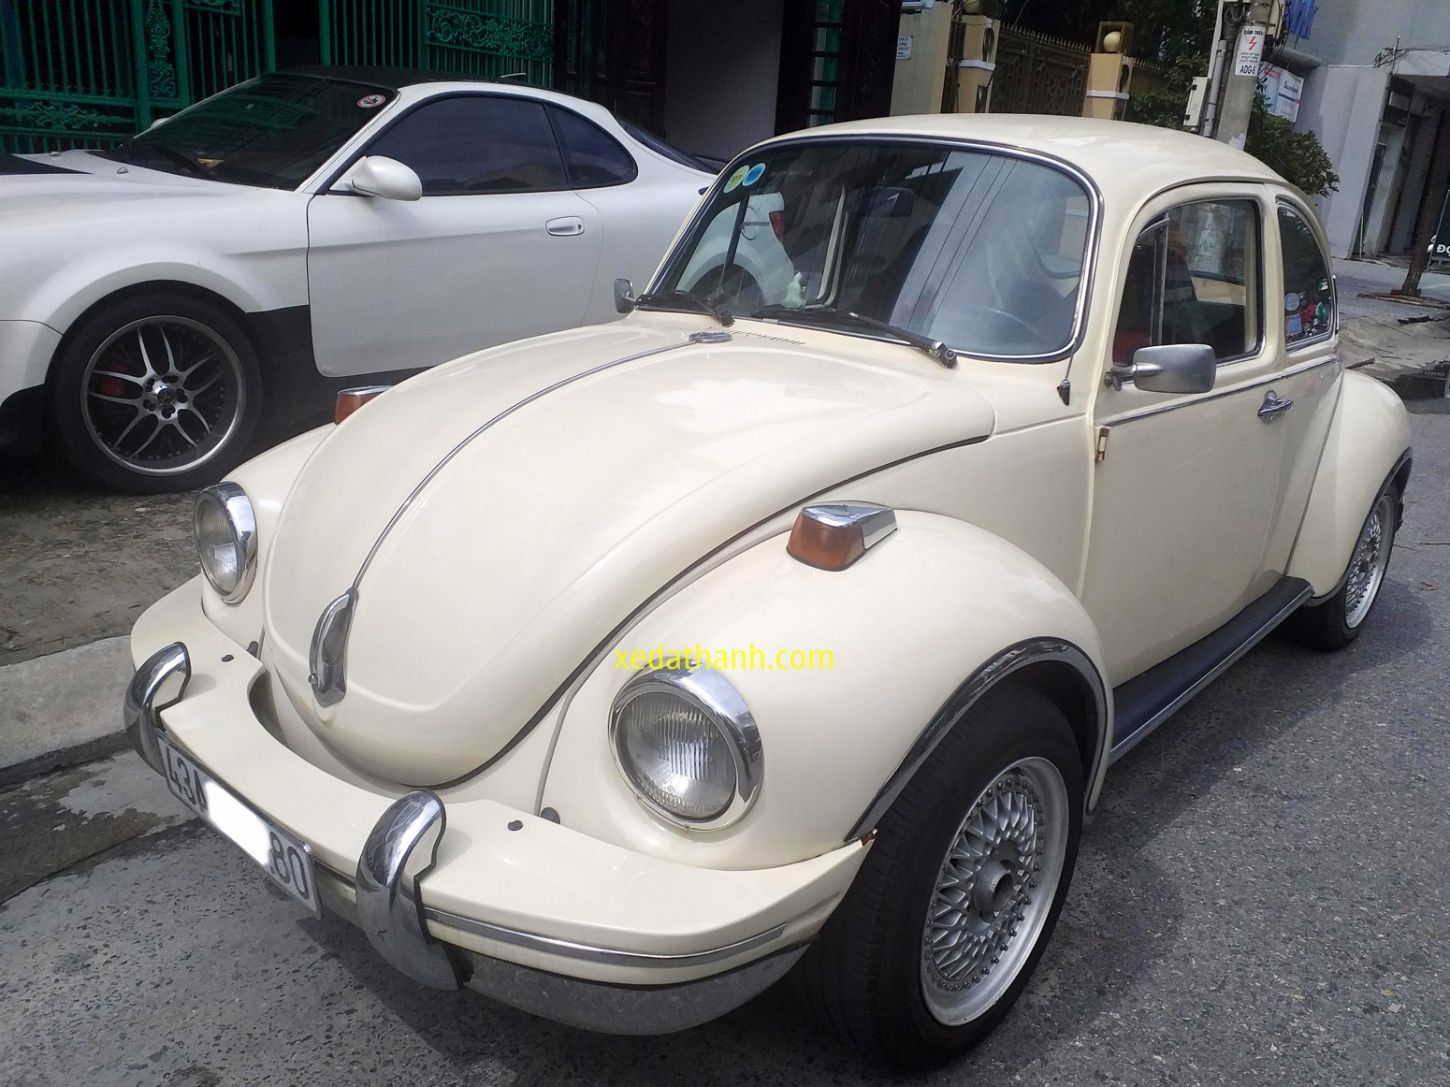 thue-xe-con-bo-co-volkswagen-beetle-4-cho